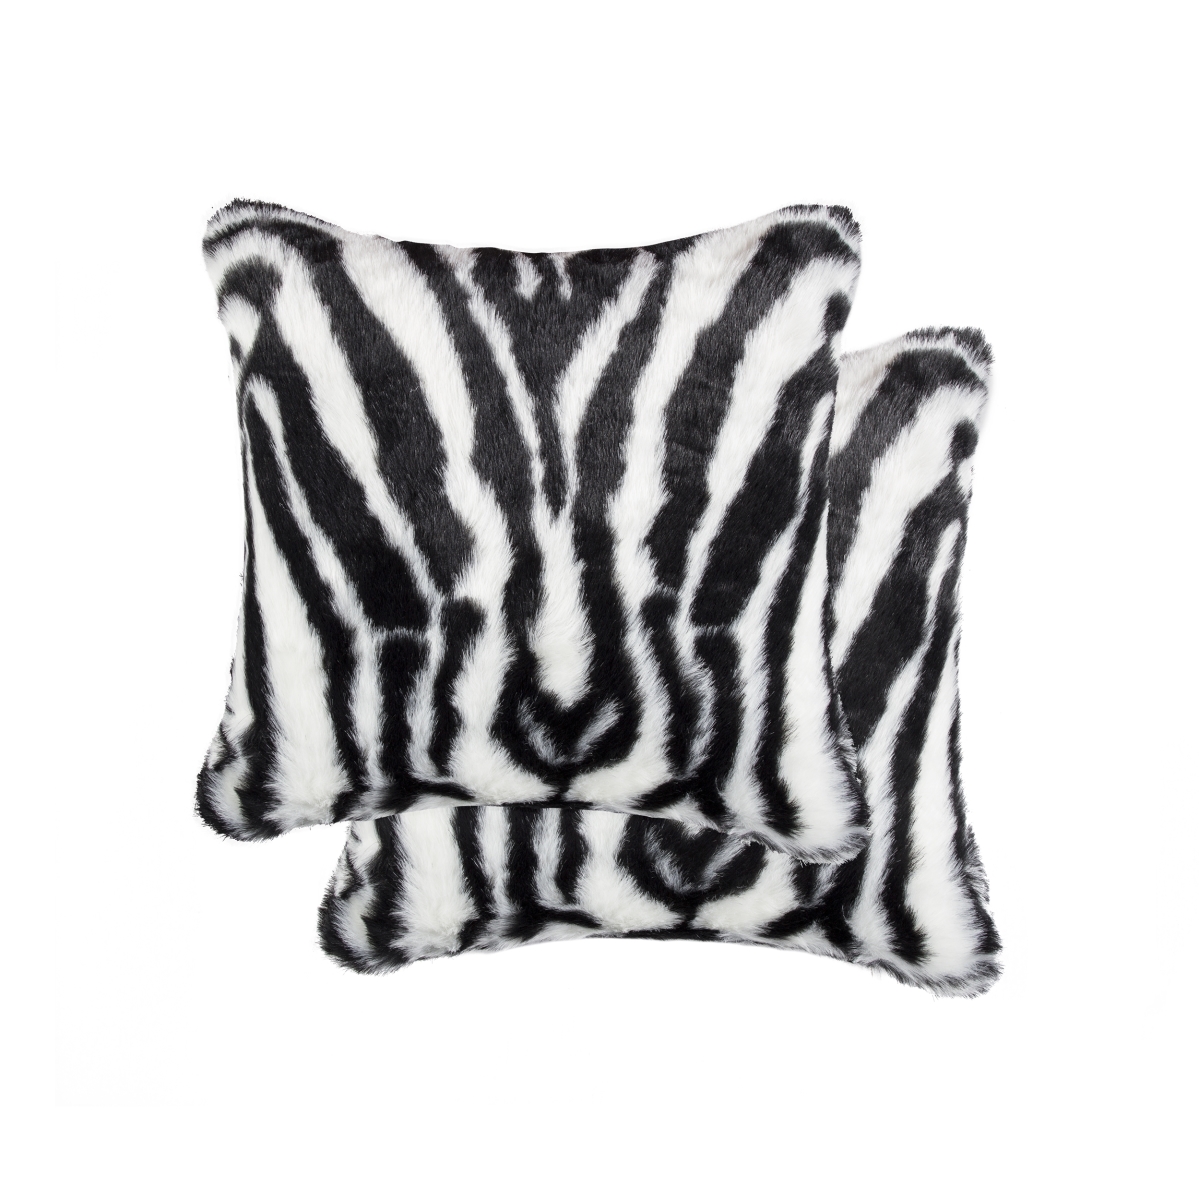 LUXE 331410041241 Luxe Home Decor Belton Faux Fur Pillow   2-Piece   Denton zebra blk/wht   18&'x18&'